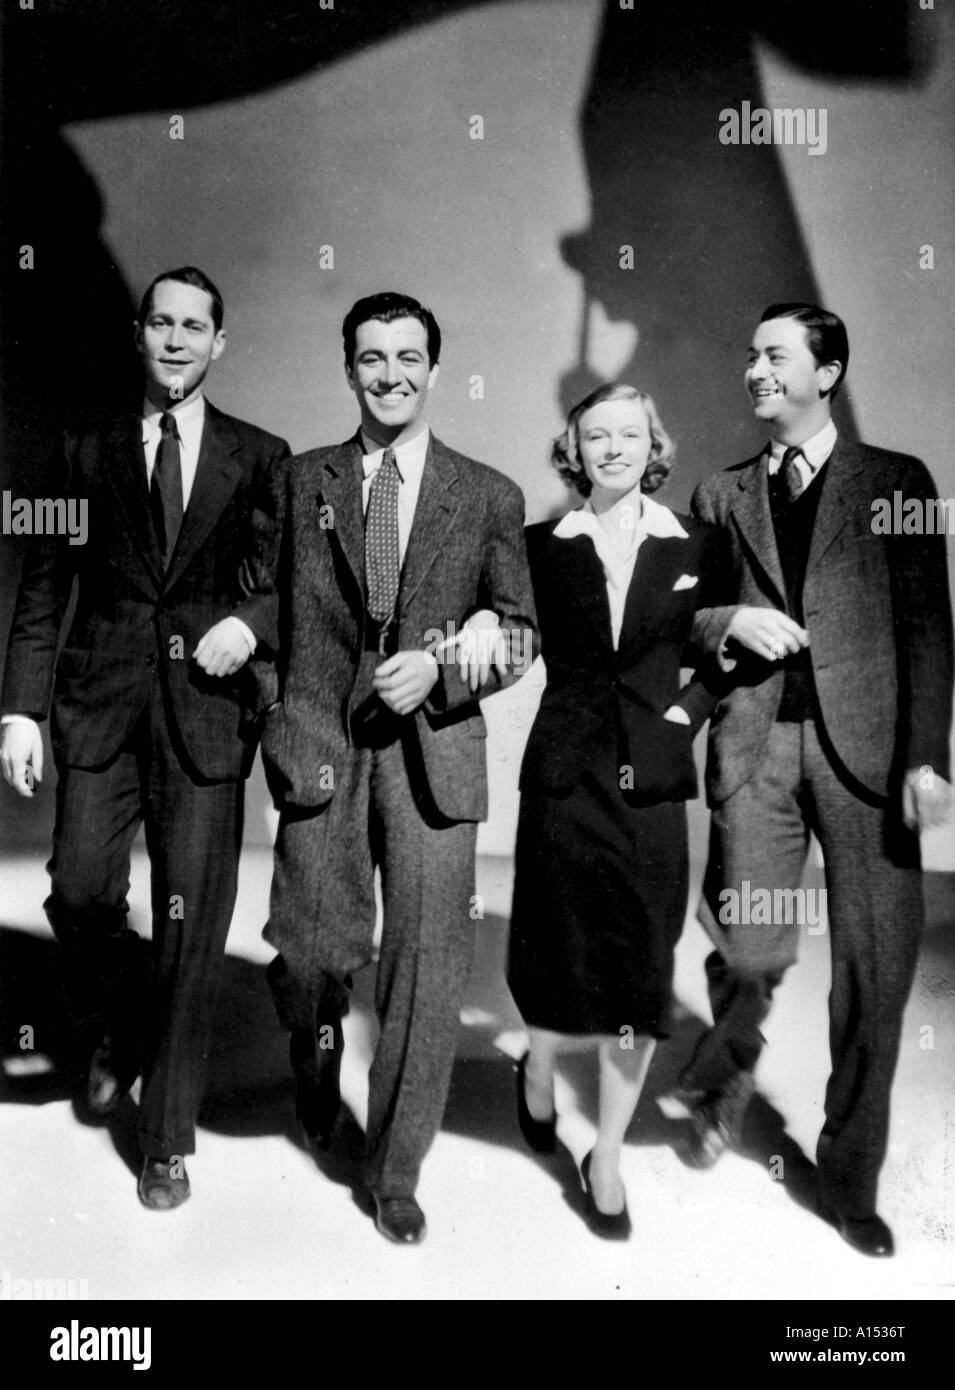 Trois camarades Année 1938 réalisateur Frank Borzage Robert Young Robert Taylor Franchot Tone Margaret Sullavan basé sur Erich Mari Banque D'Images